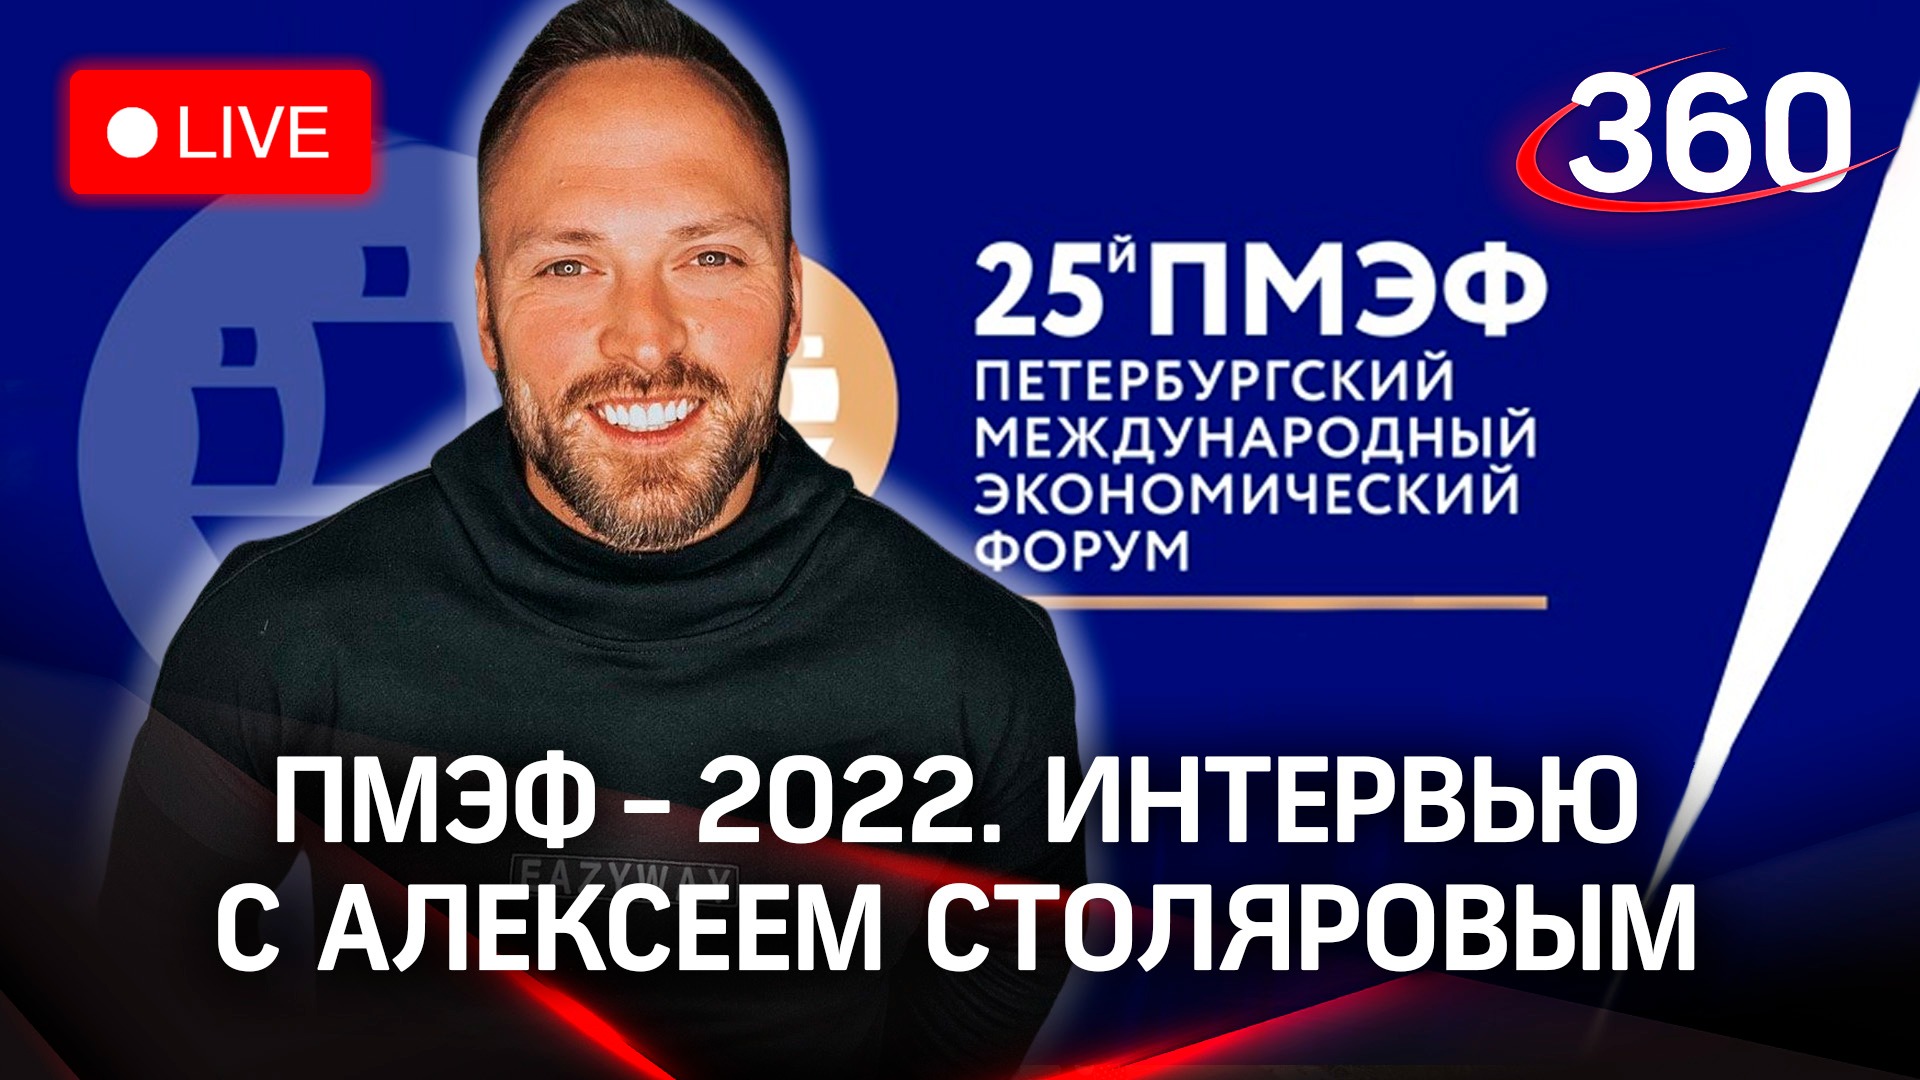 ПМЭФ-2022: интервью с Алексеем Столяровым, спортивным блогером. Как спорт помогает создать бренд?